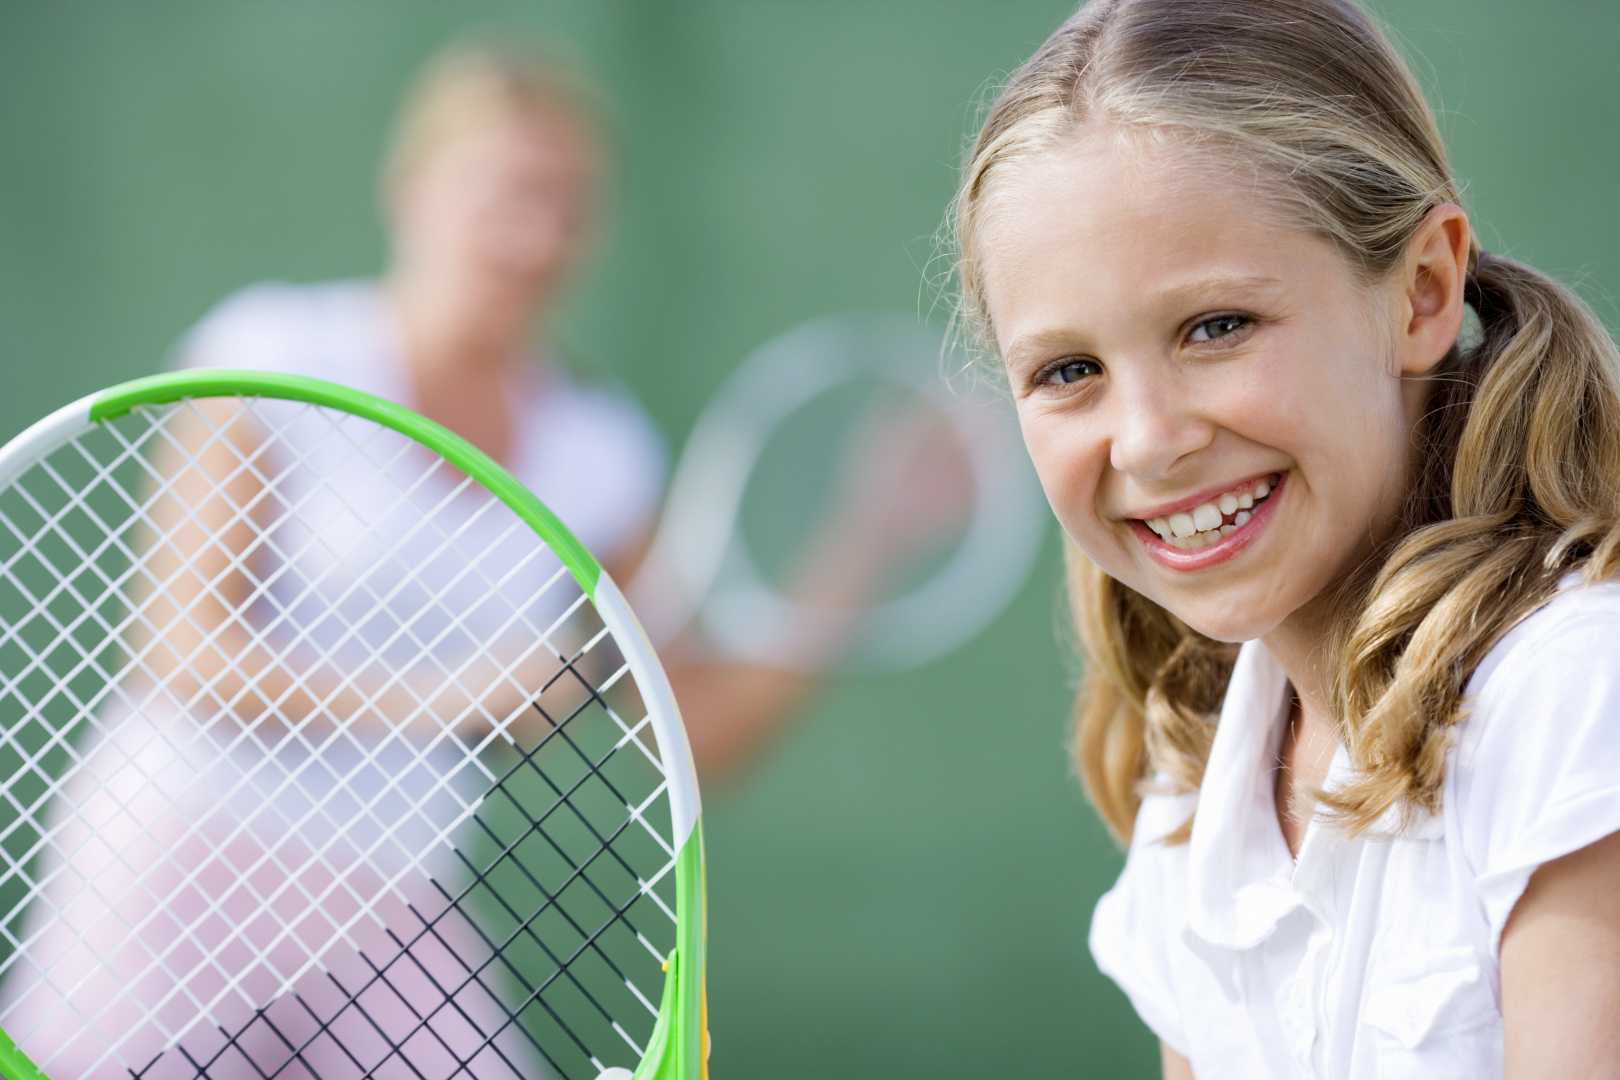 Настольный теннис для детей - тренировки, соревнования, польза